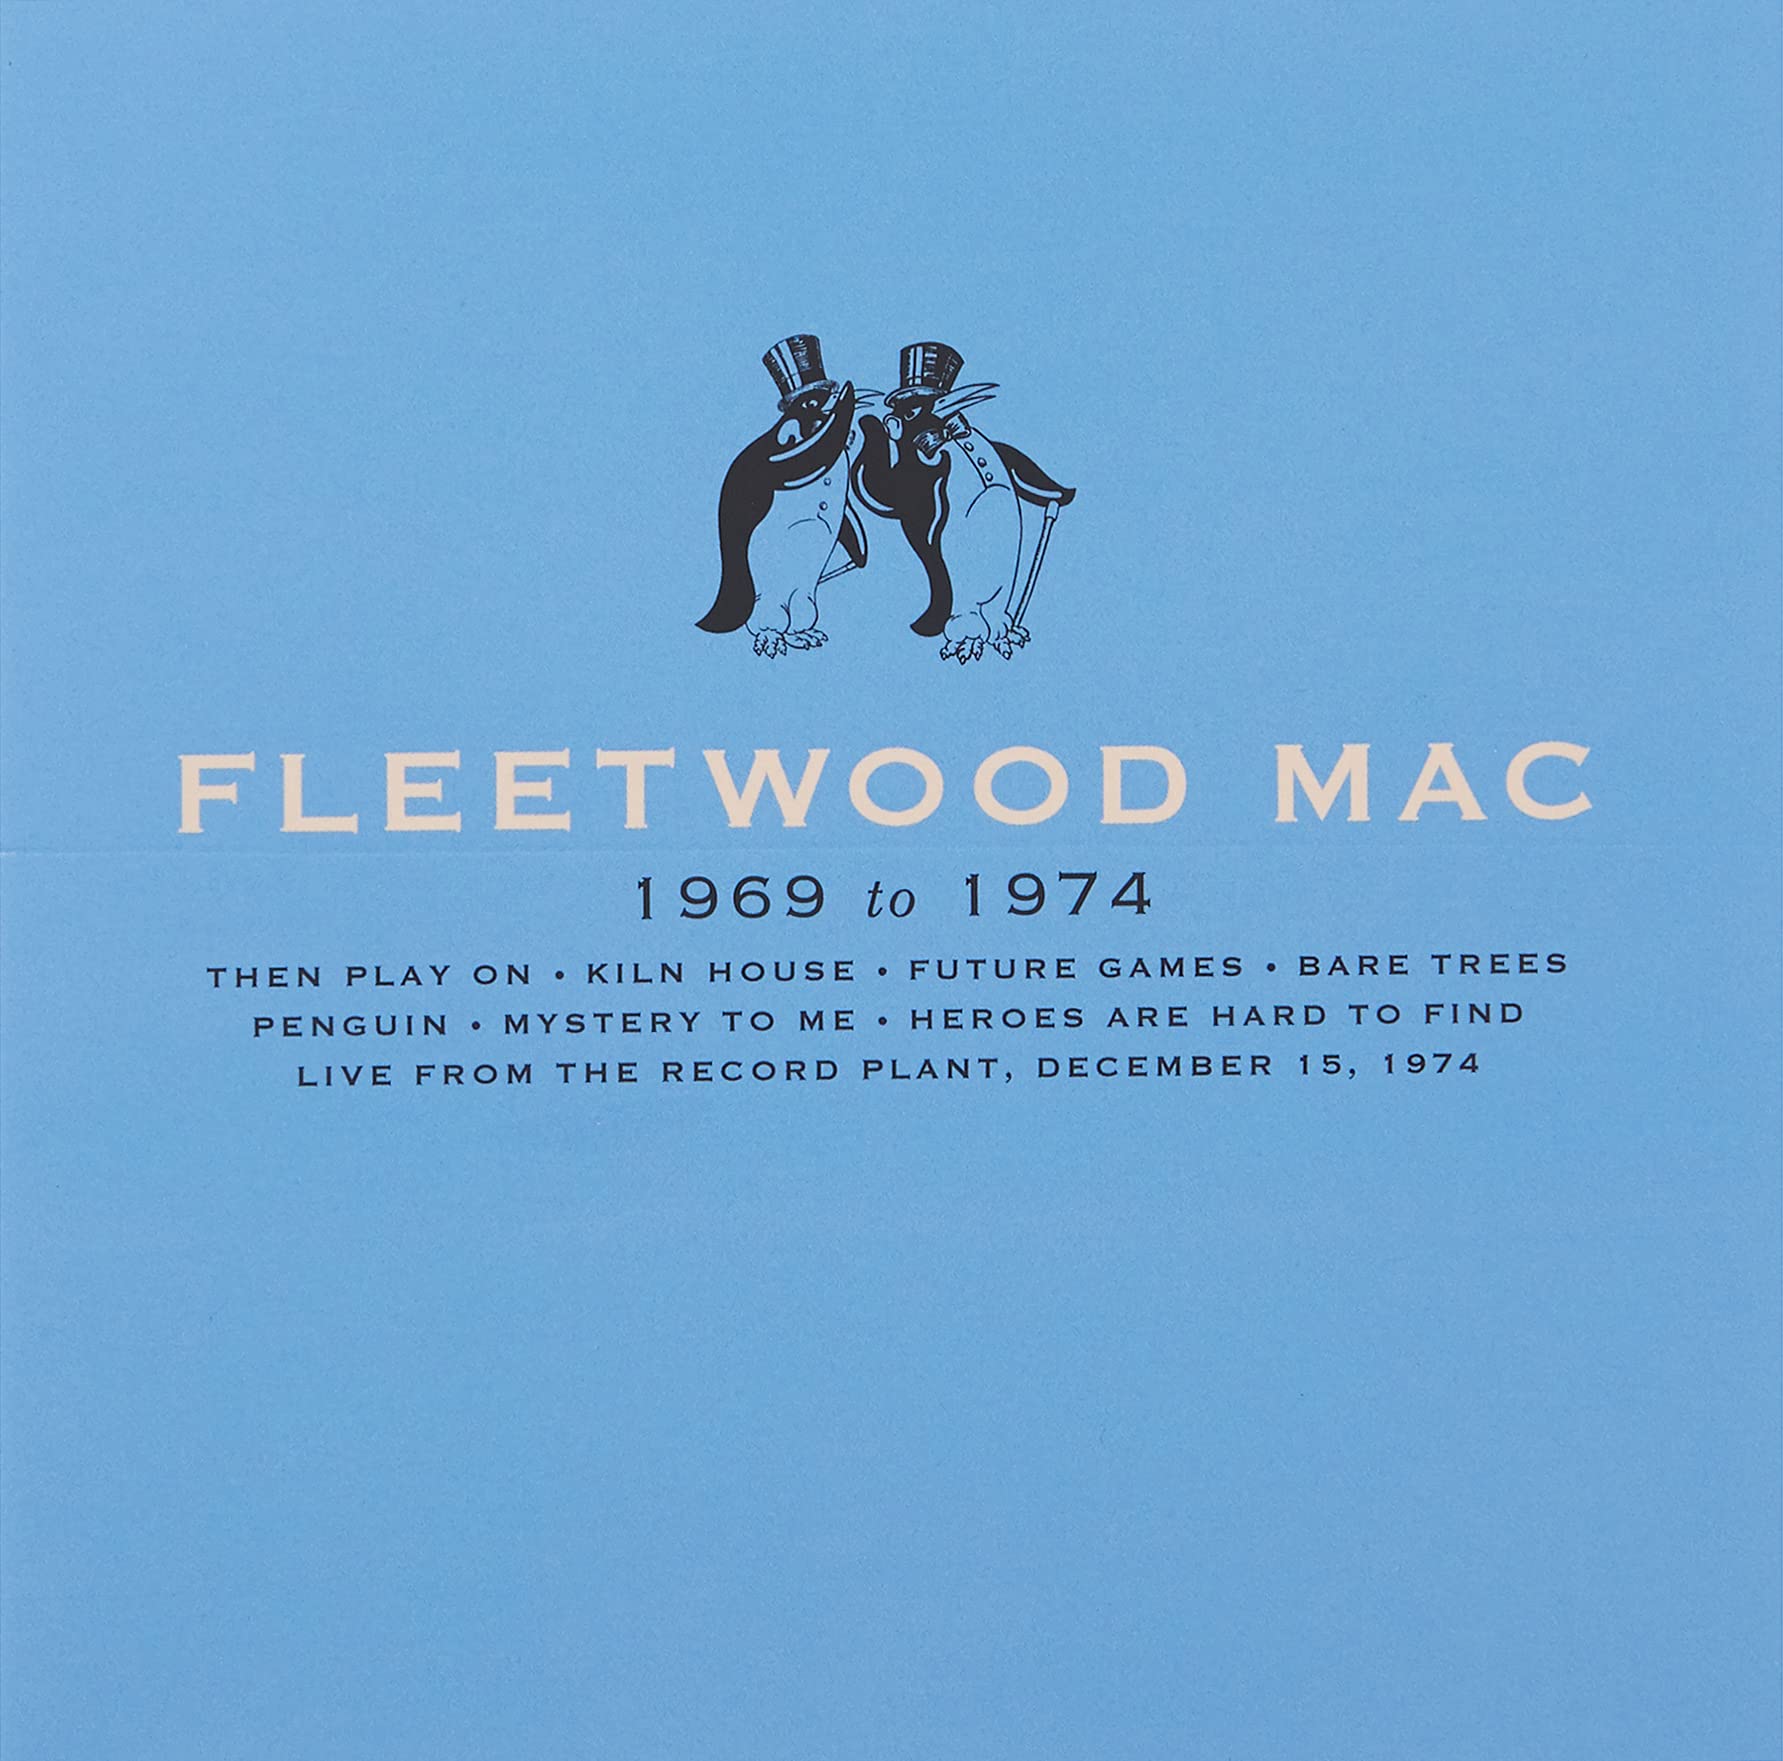 Fleetwood Mac – 1969 to 1974 (R2 596006, 8CD REMASTERED BOXSET) (2020) FLAC